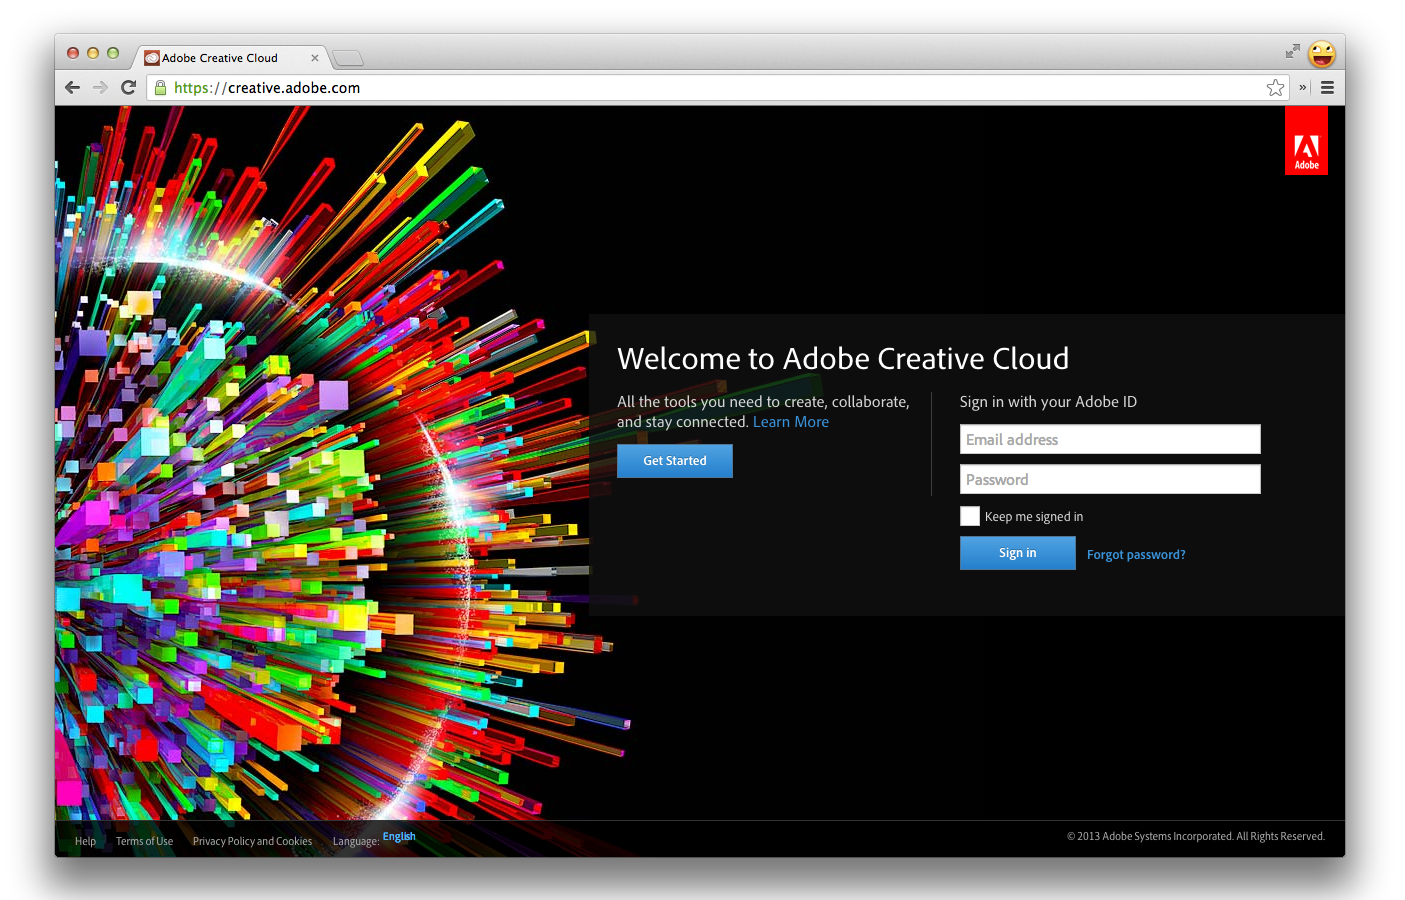 การสมัครใช้บริการ Creative Cloud ของ Adobe มาพร้อมกับ Edge Inspect